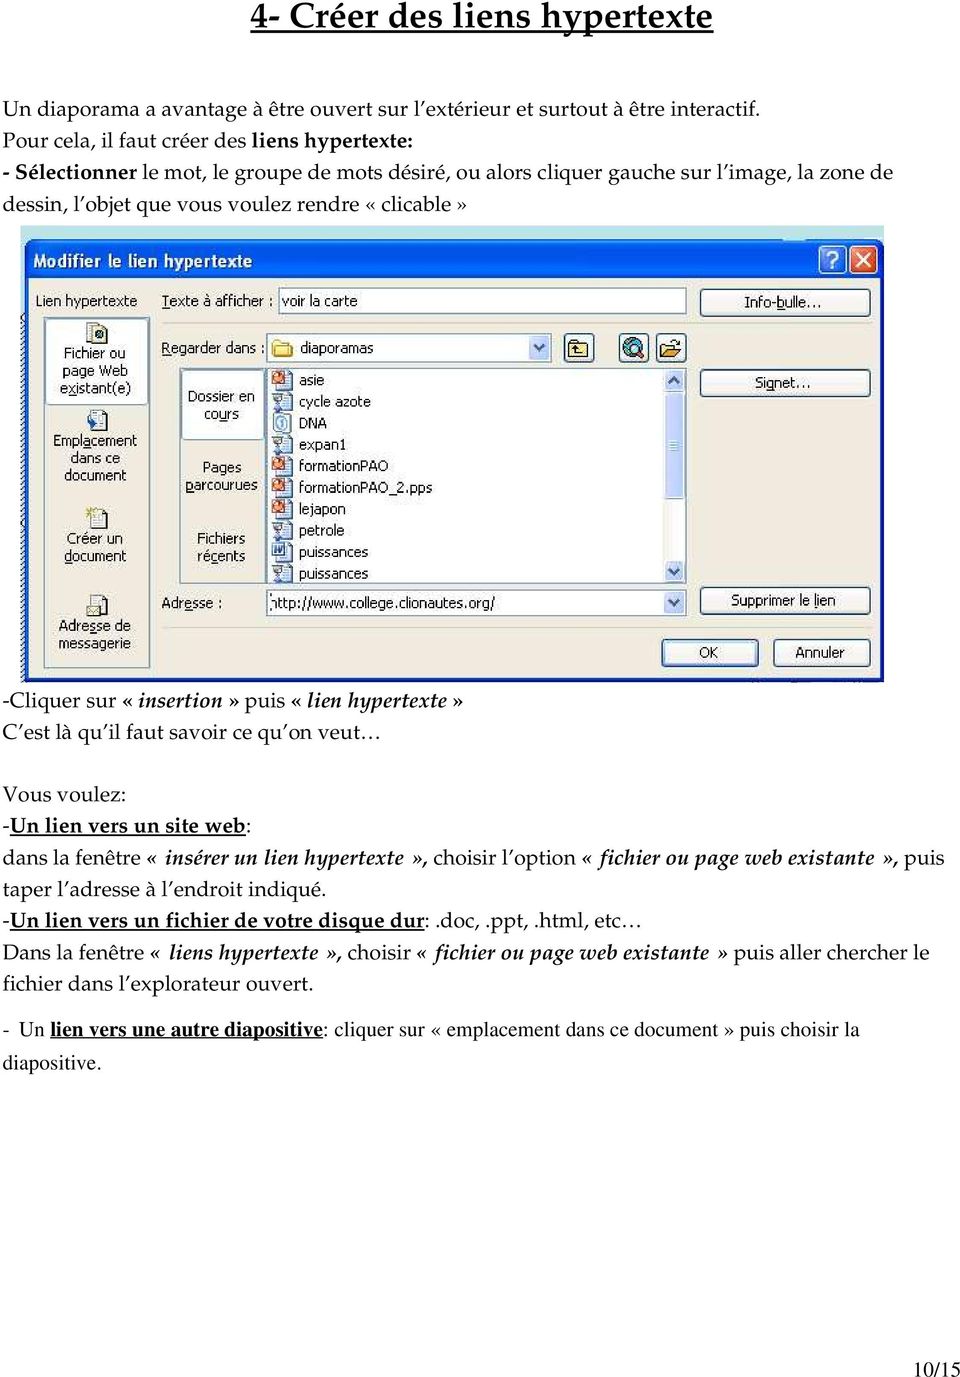 sur «insertion» puis «lien hypertexte» C est là qu il faut savoir ce qu on veut Vous voulez: Un lien vers un site web: dans la fenêtre «insérer un lien hypertexte», choisir l option «fichier ou page